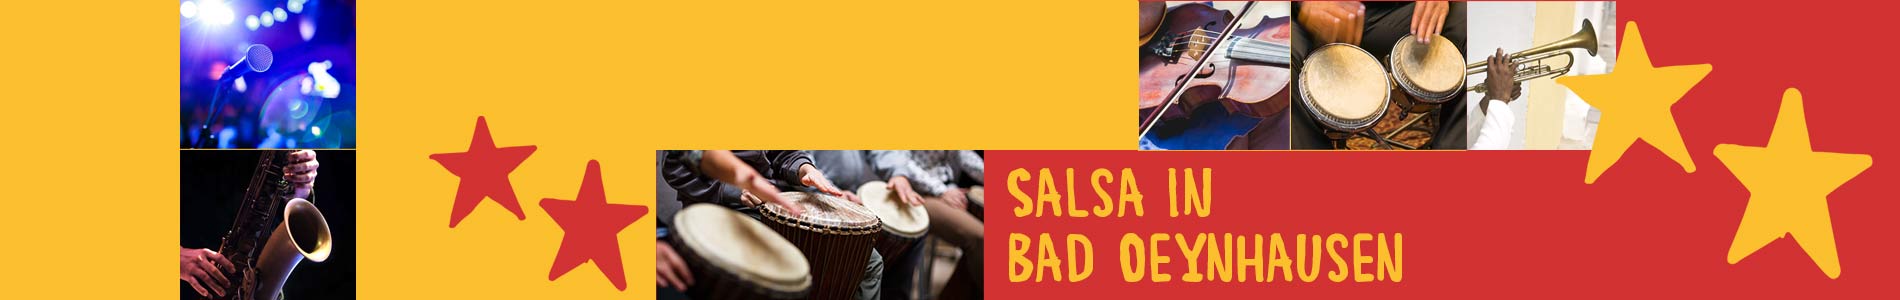 Salsa in Bad Oeynhausen – Salsa lernen und tanzen, Tanzkurse, Partys, Veranstaltungen